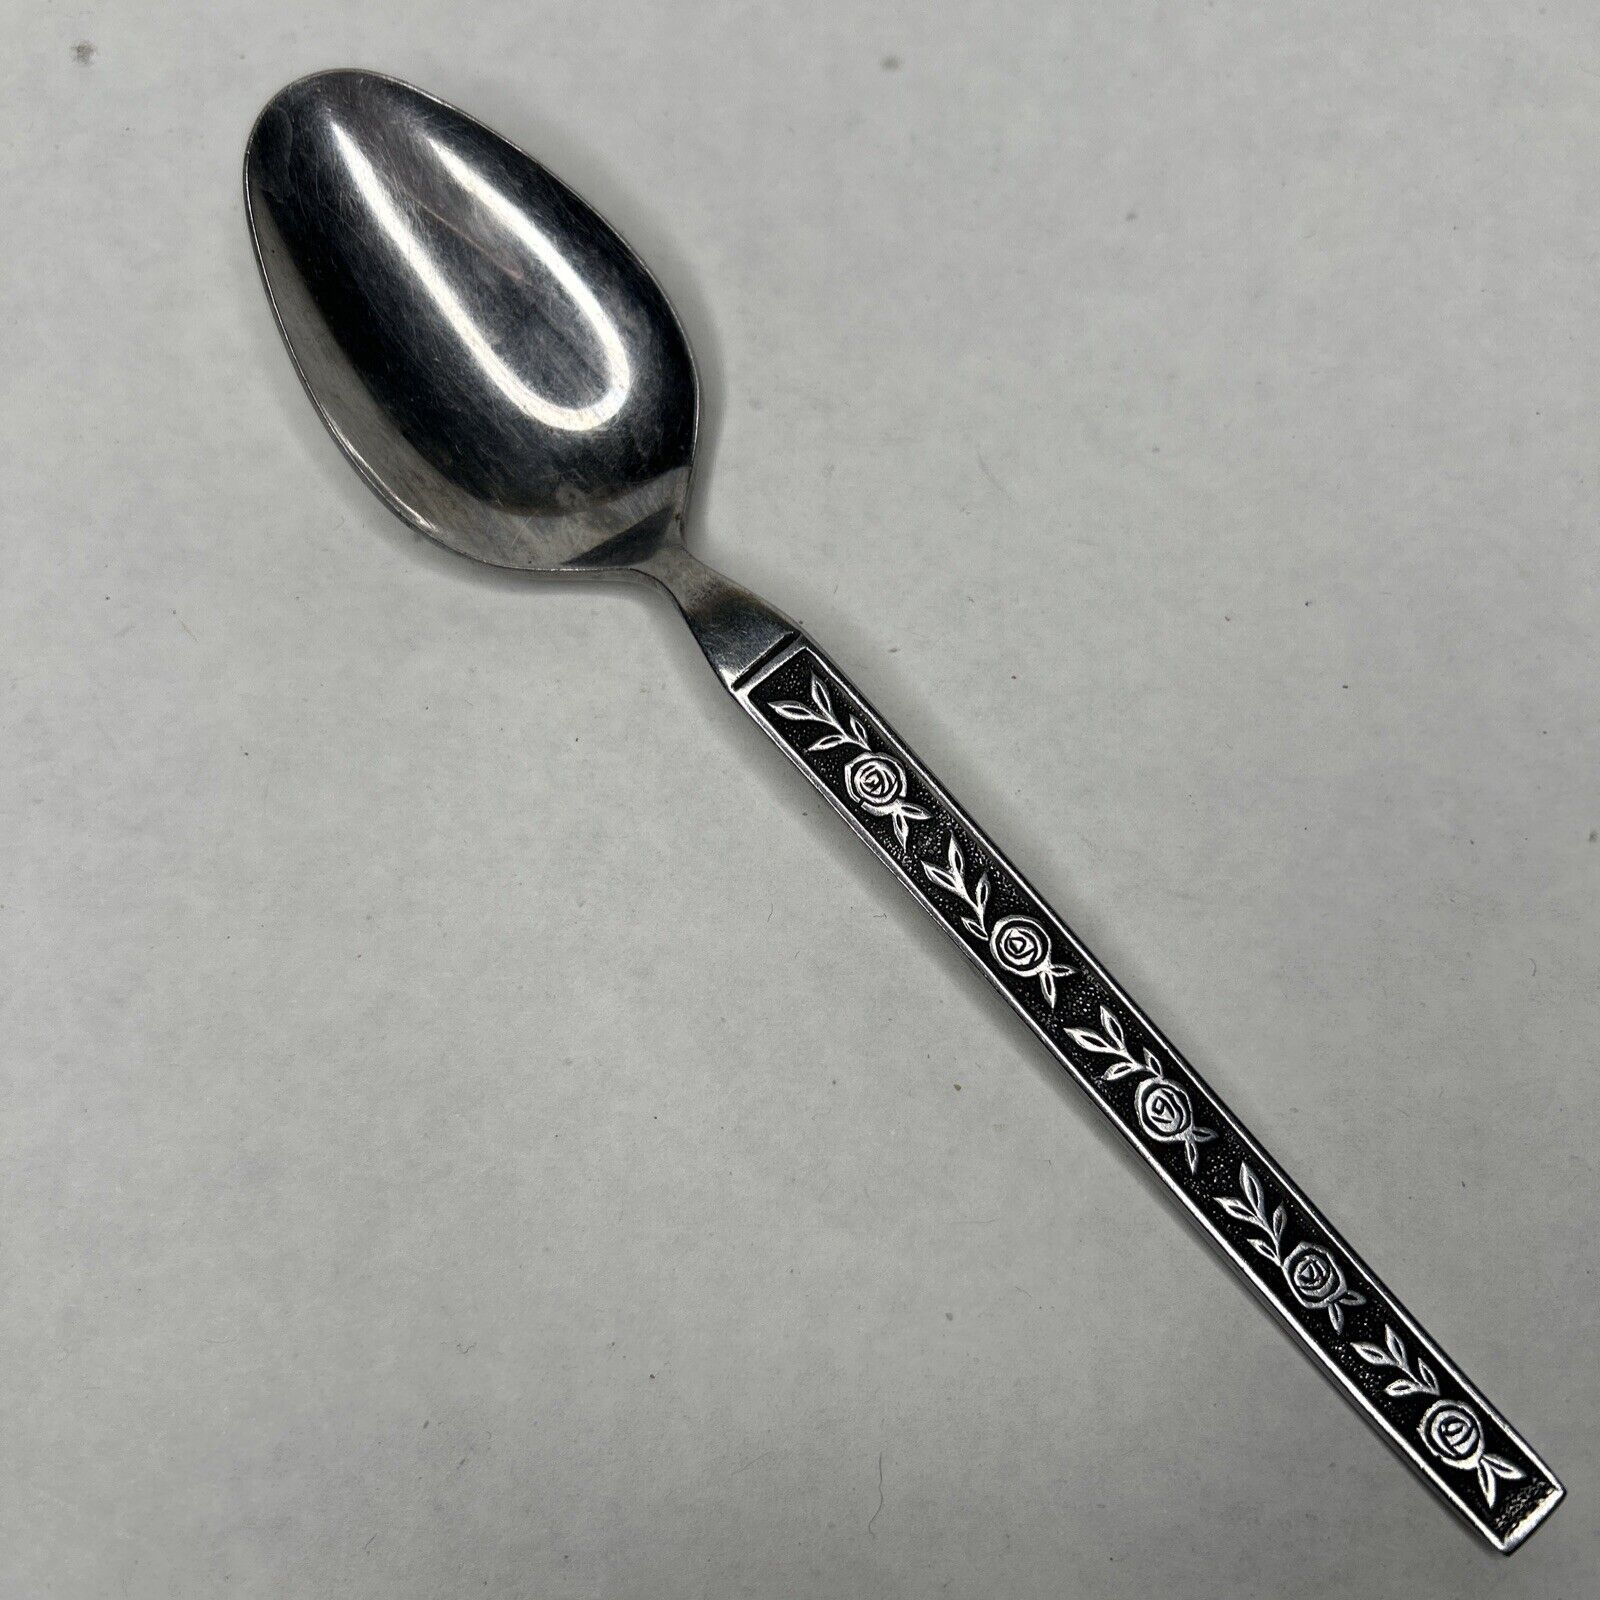 Vintage Stainless Steel Spoon Japan- heavy wear signs